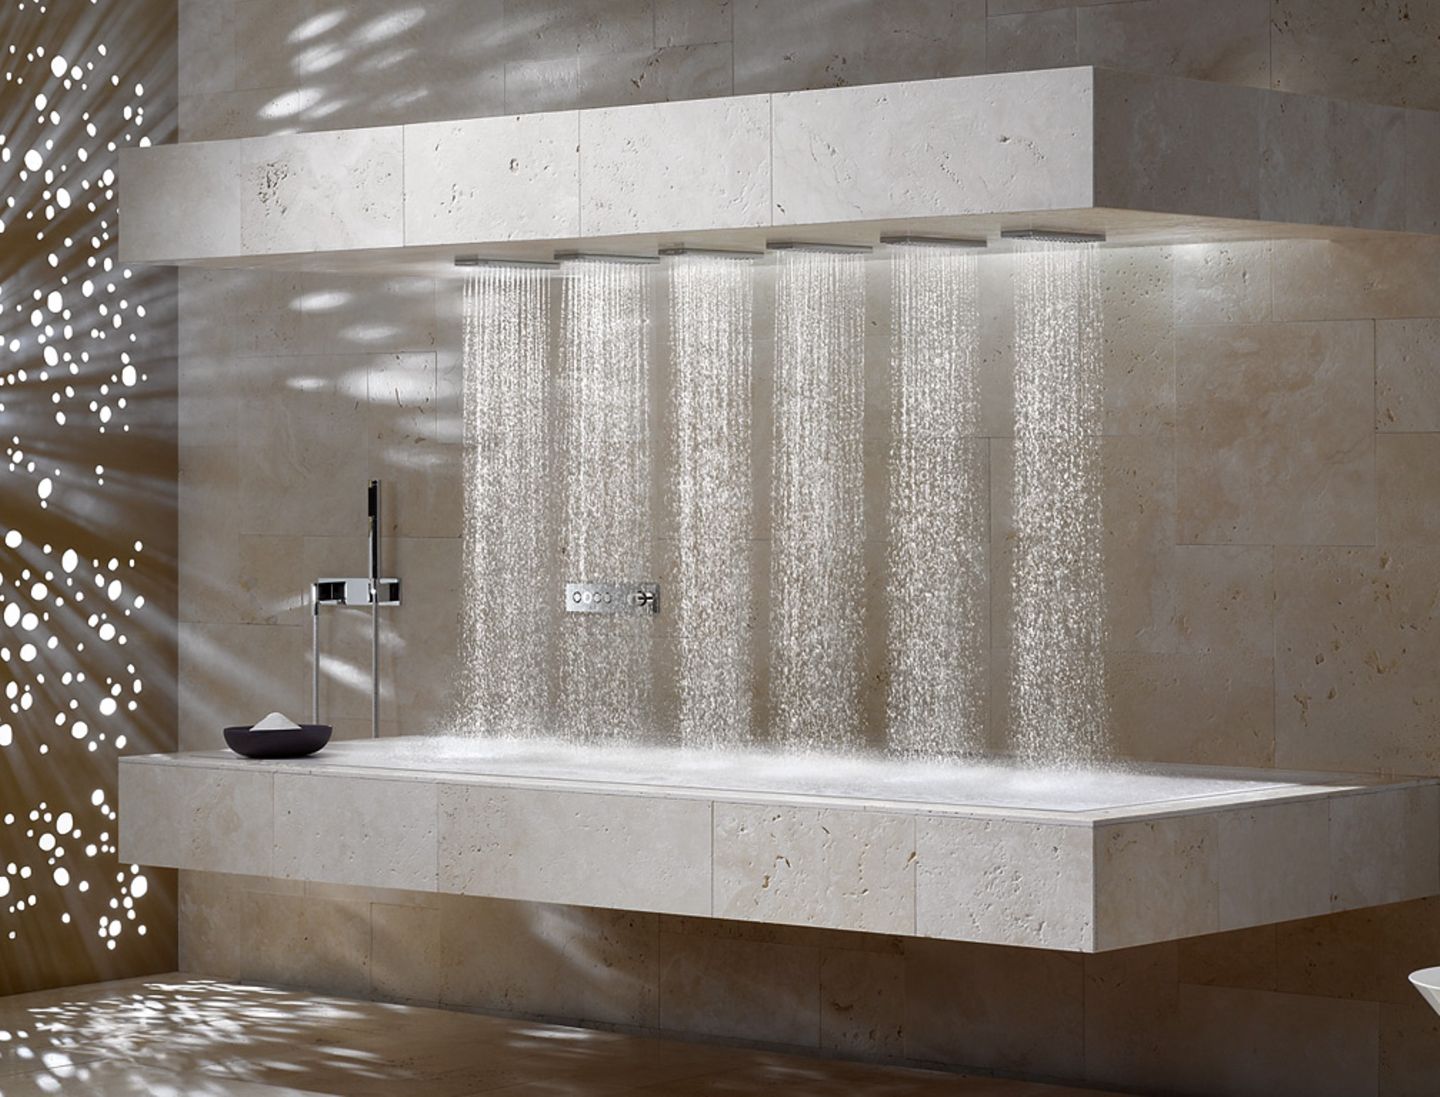 Duschen mit Luxus-Feeling: "Horizontal Shower" von Dornbracht